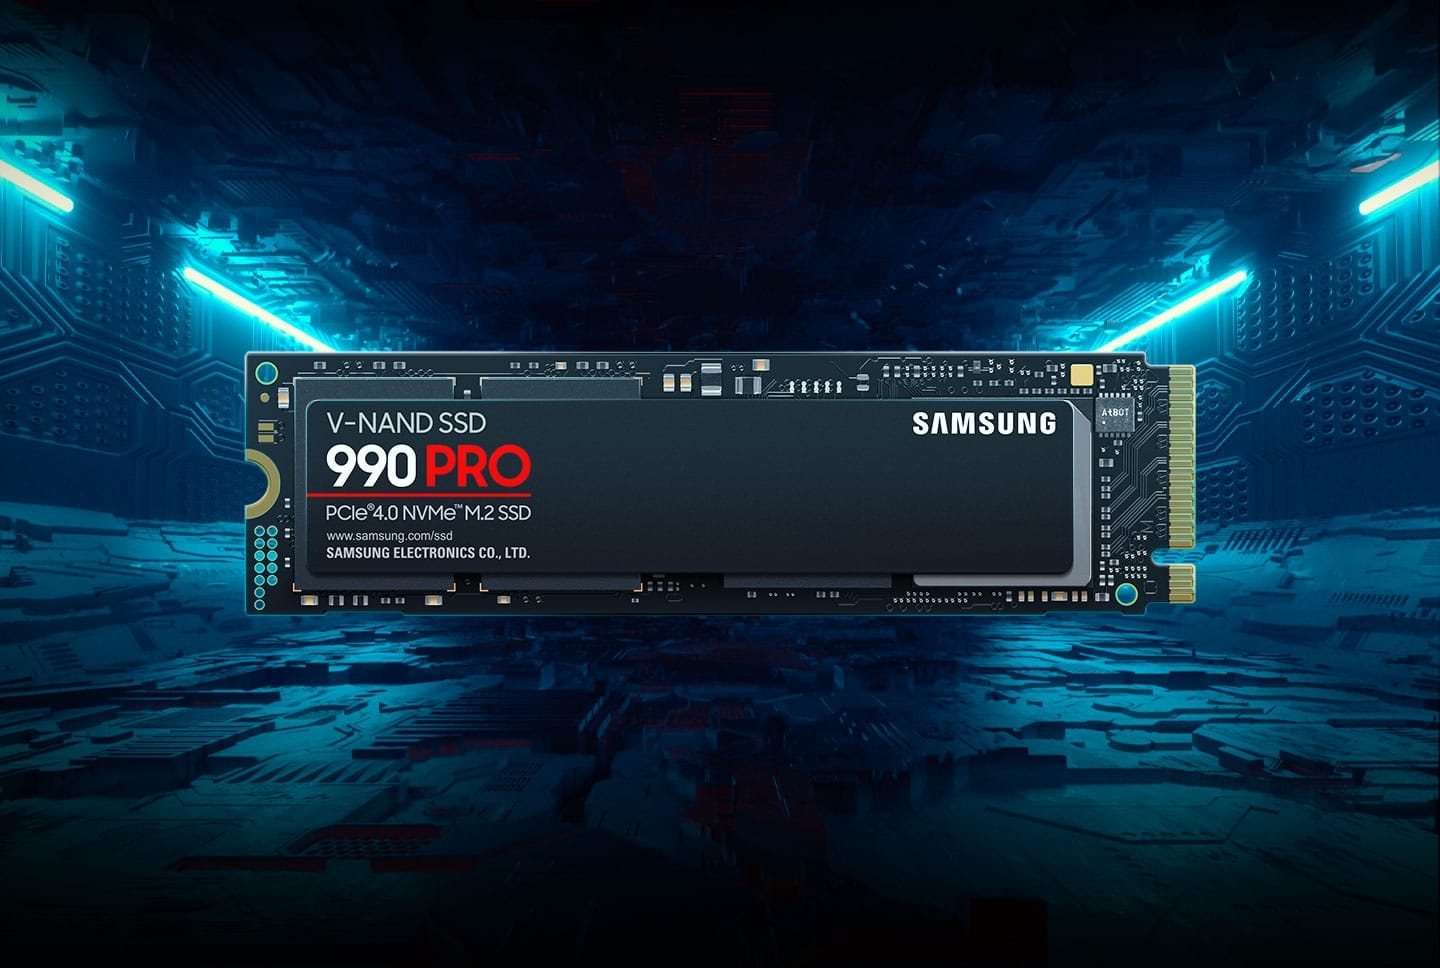 Samsung lance les 970 EVO et Pro - SSD 